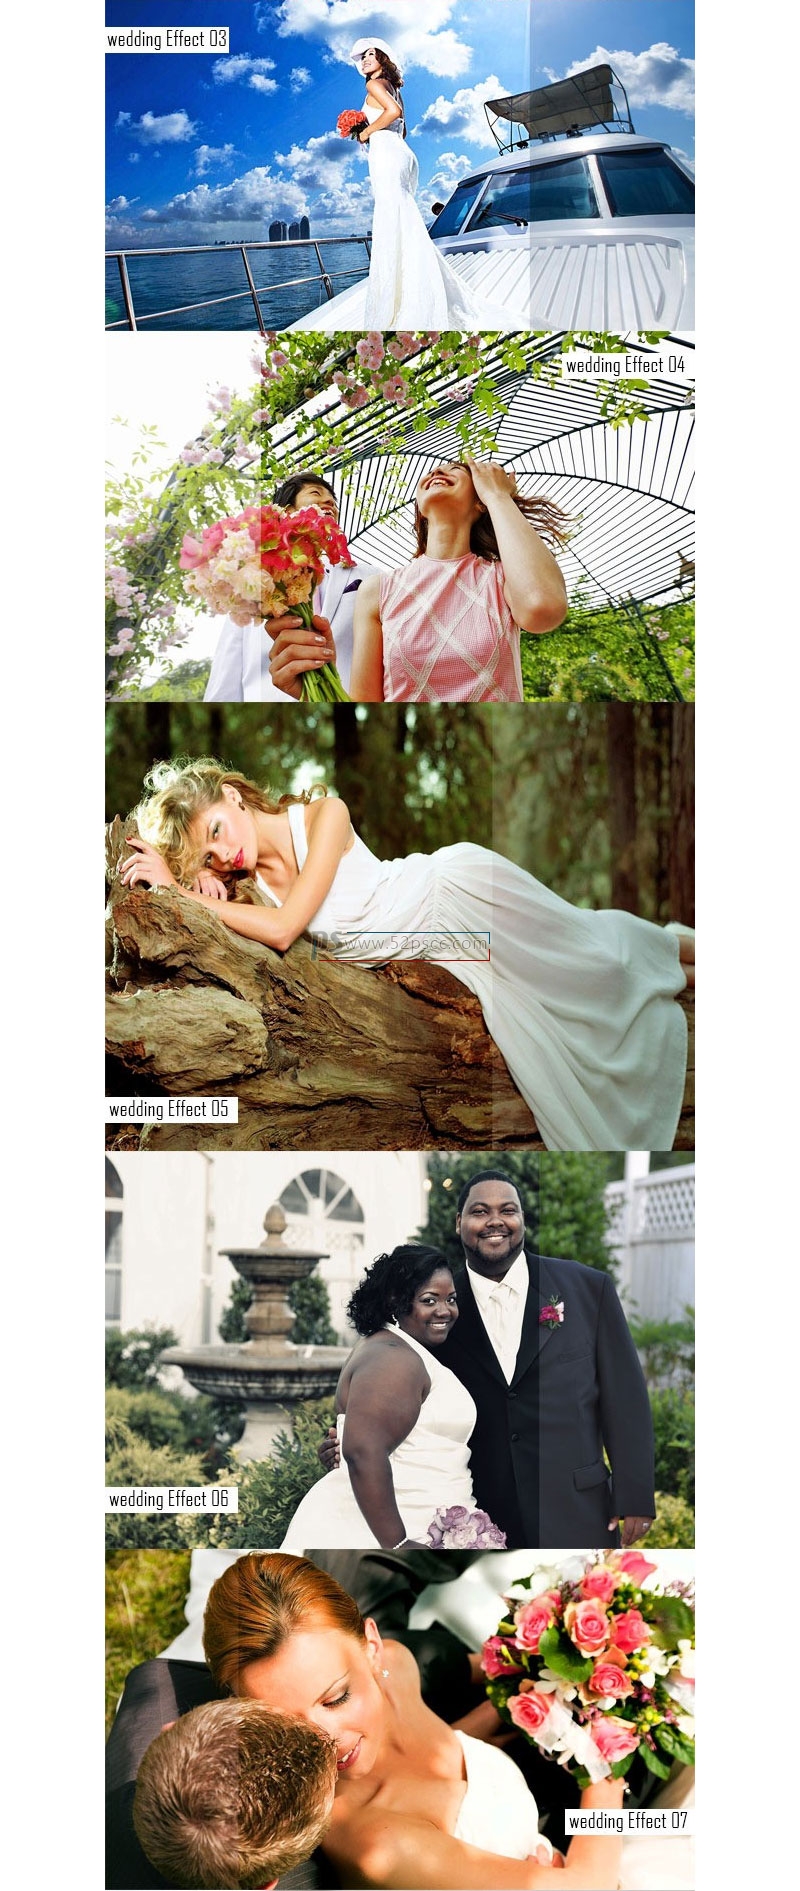 20组婚礼照片HDR效果动作HDR照片效果Photoshop修饰动作